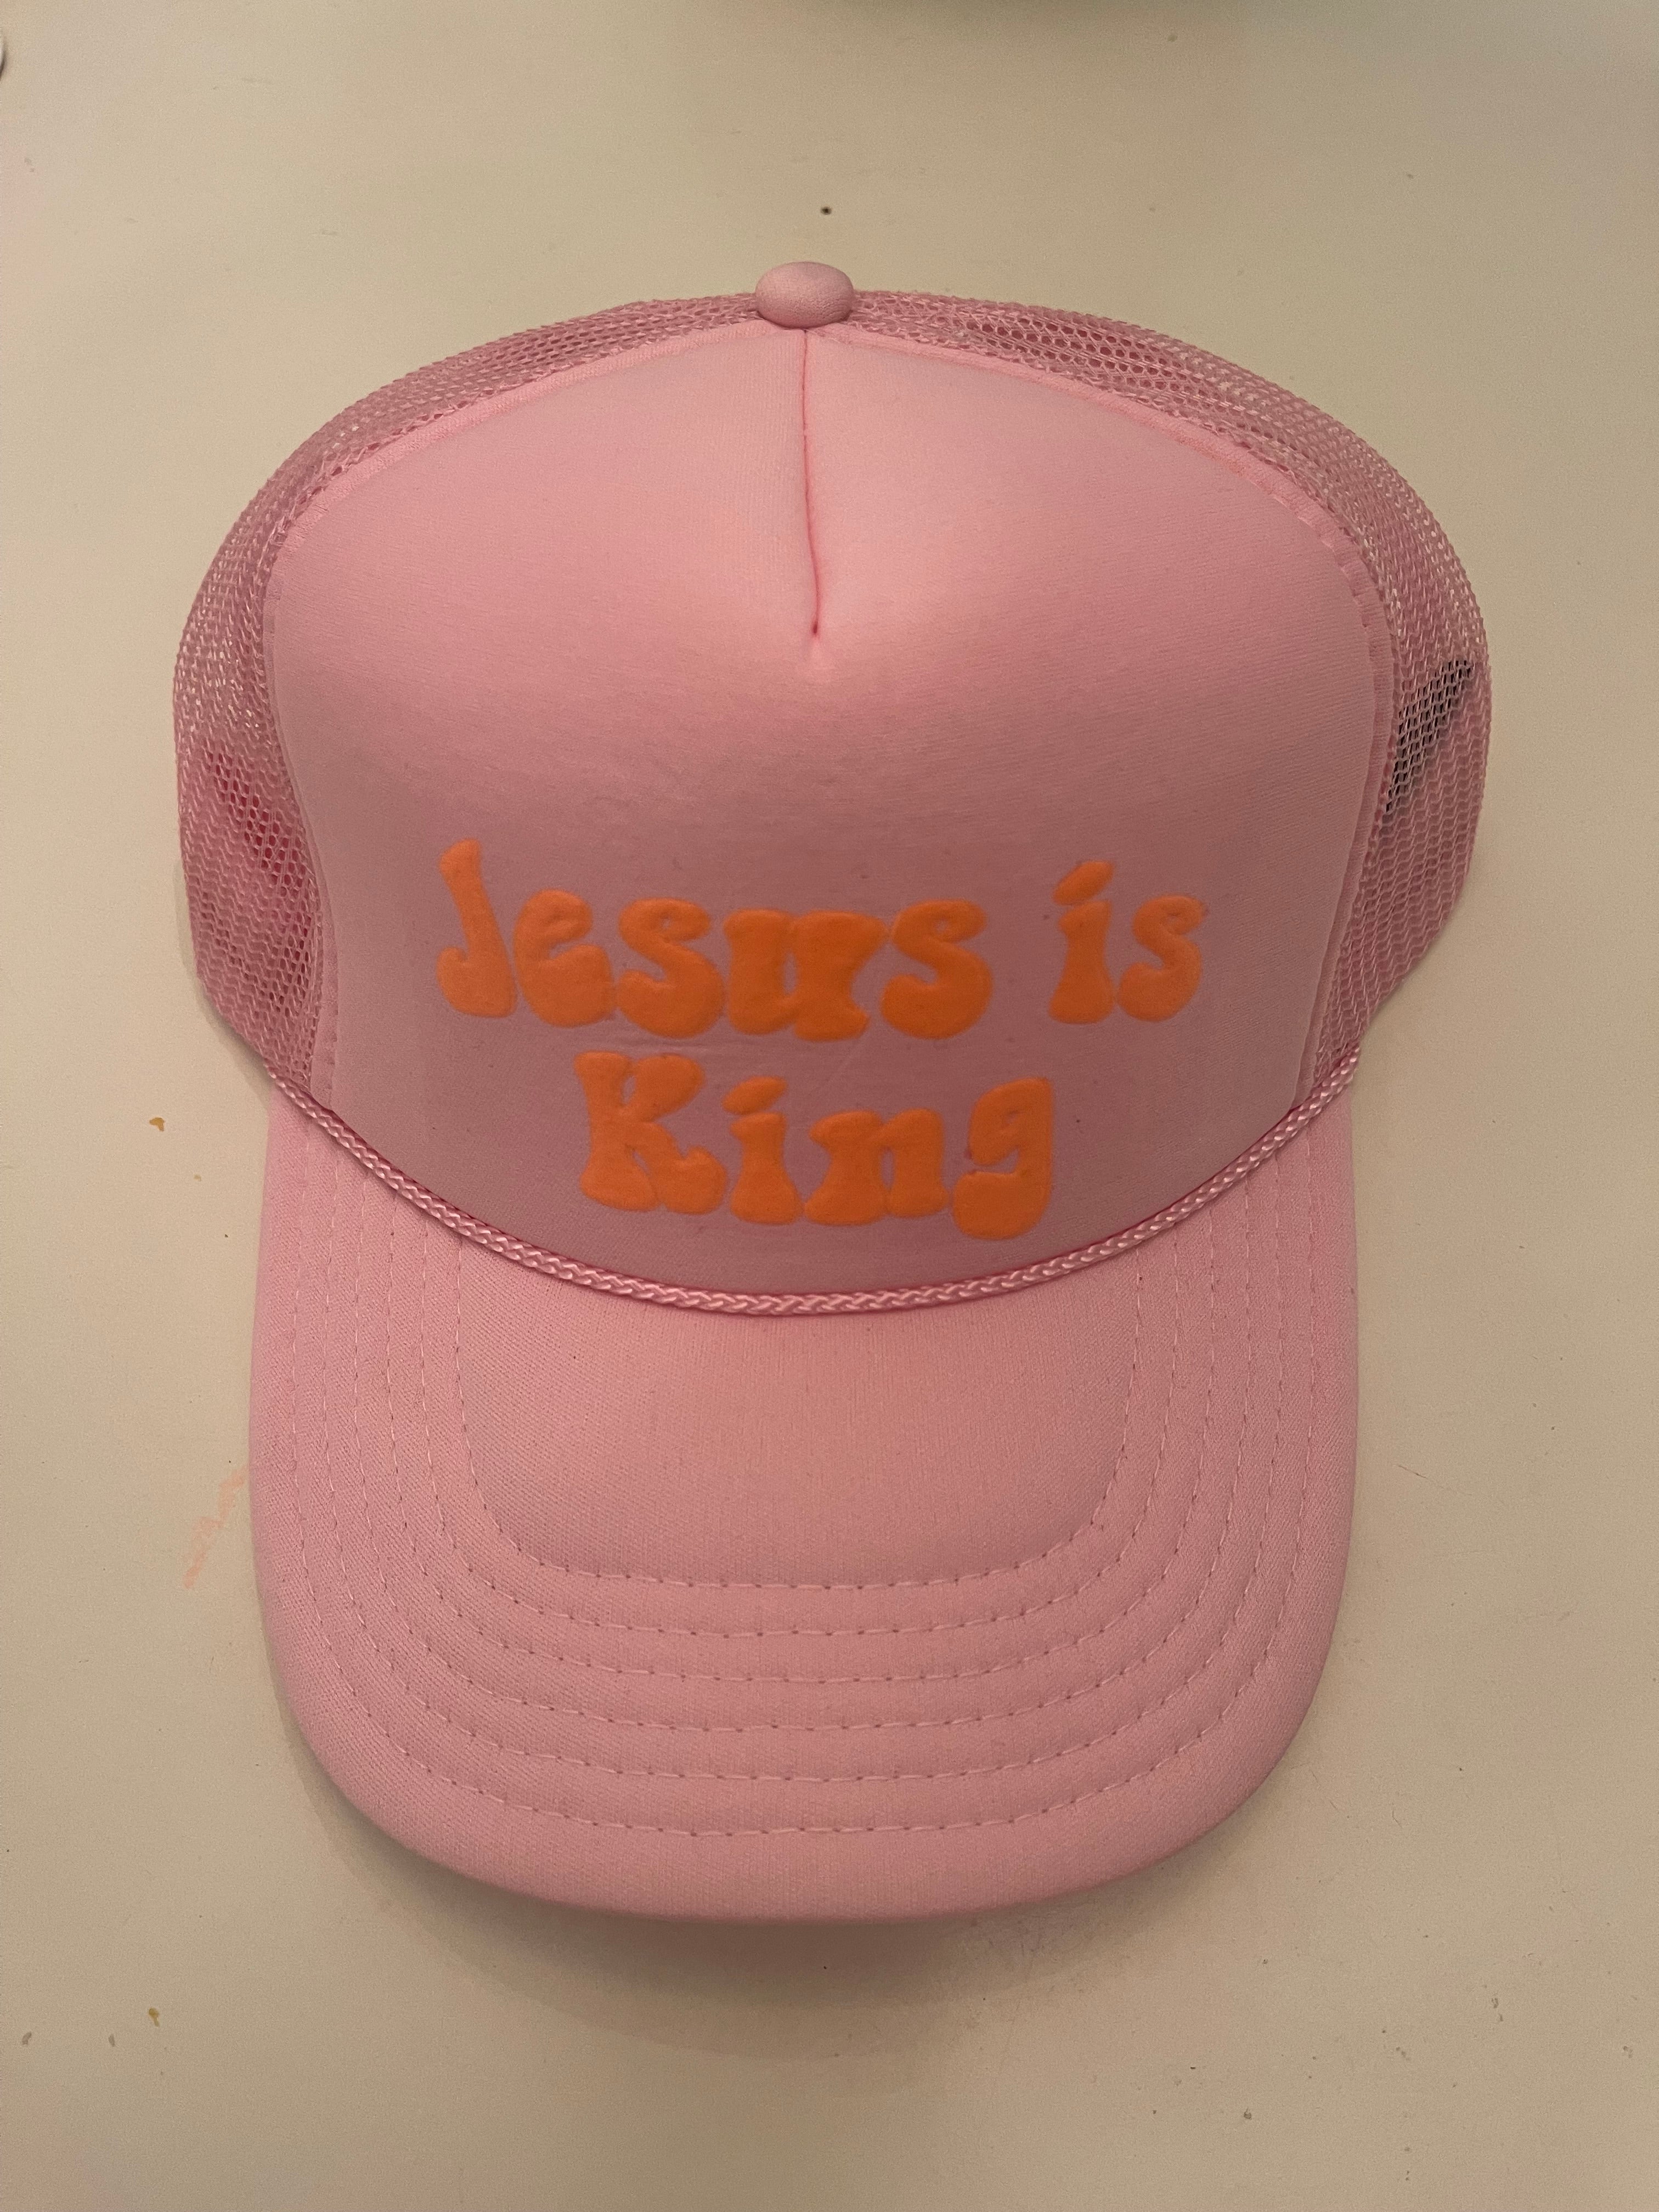 Jesus is King! Trucker Hat `pink and neon orange